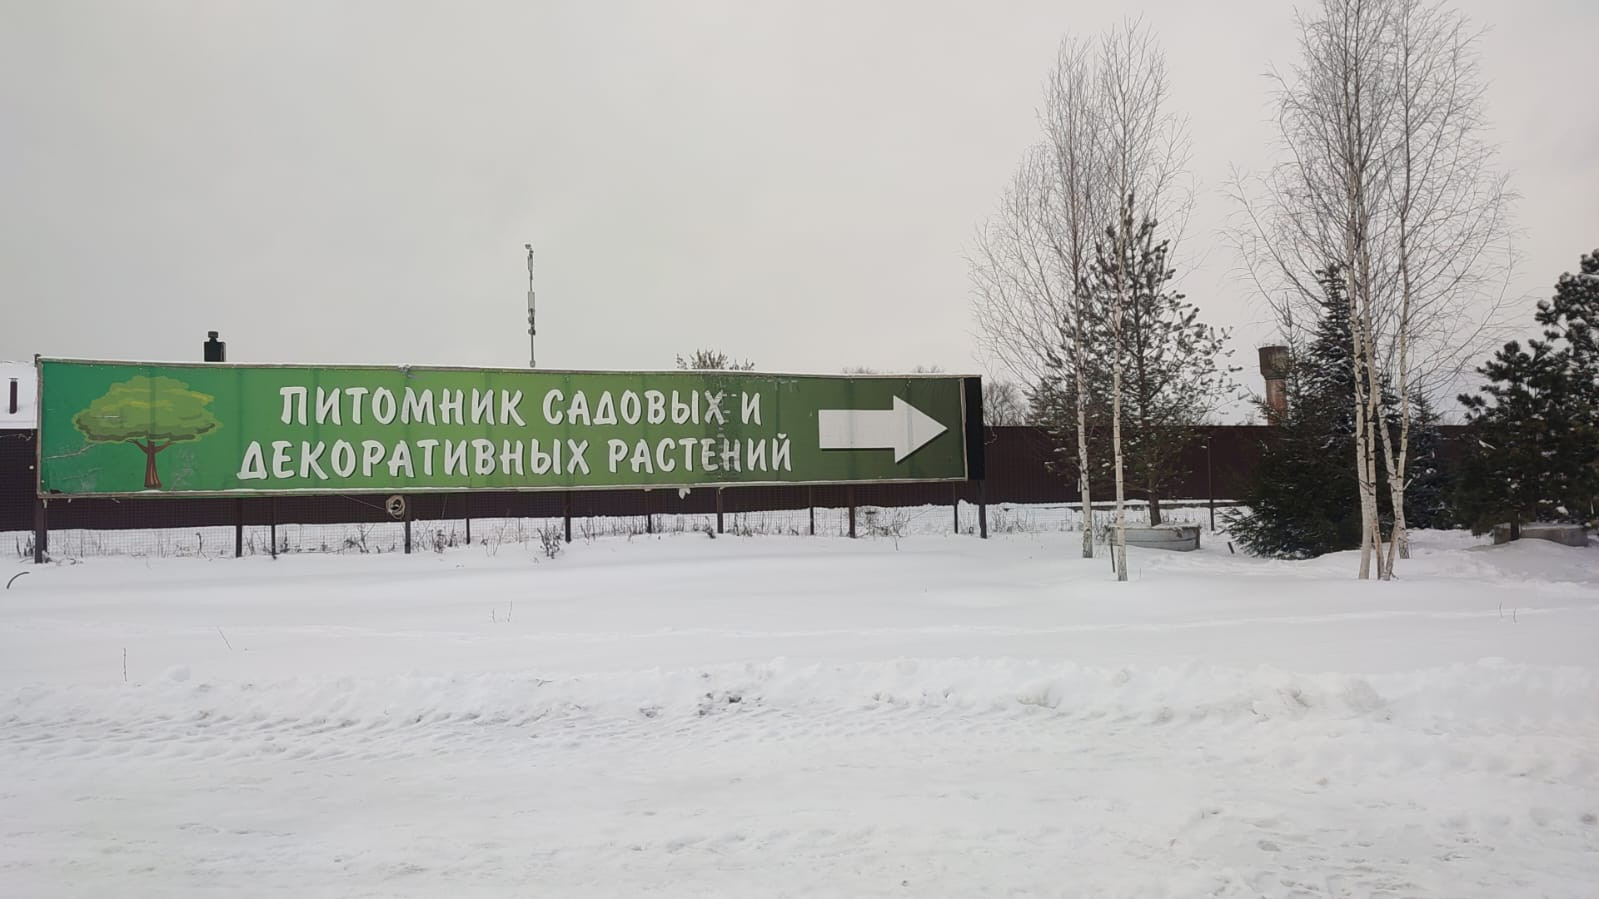 Separate area. Аксиньино Москва.